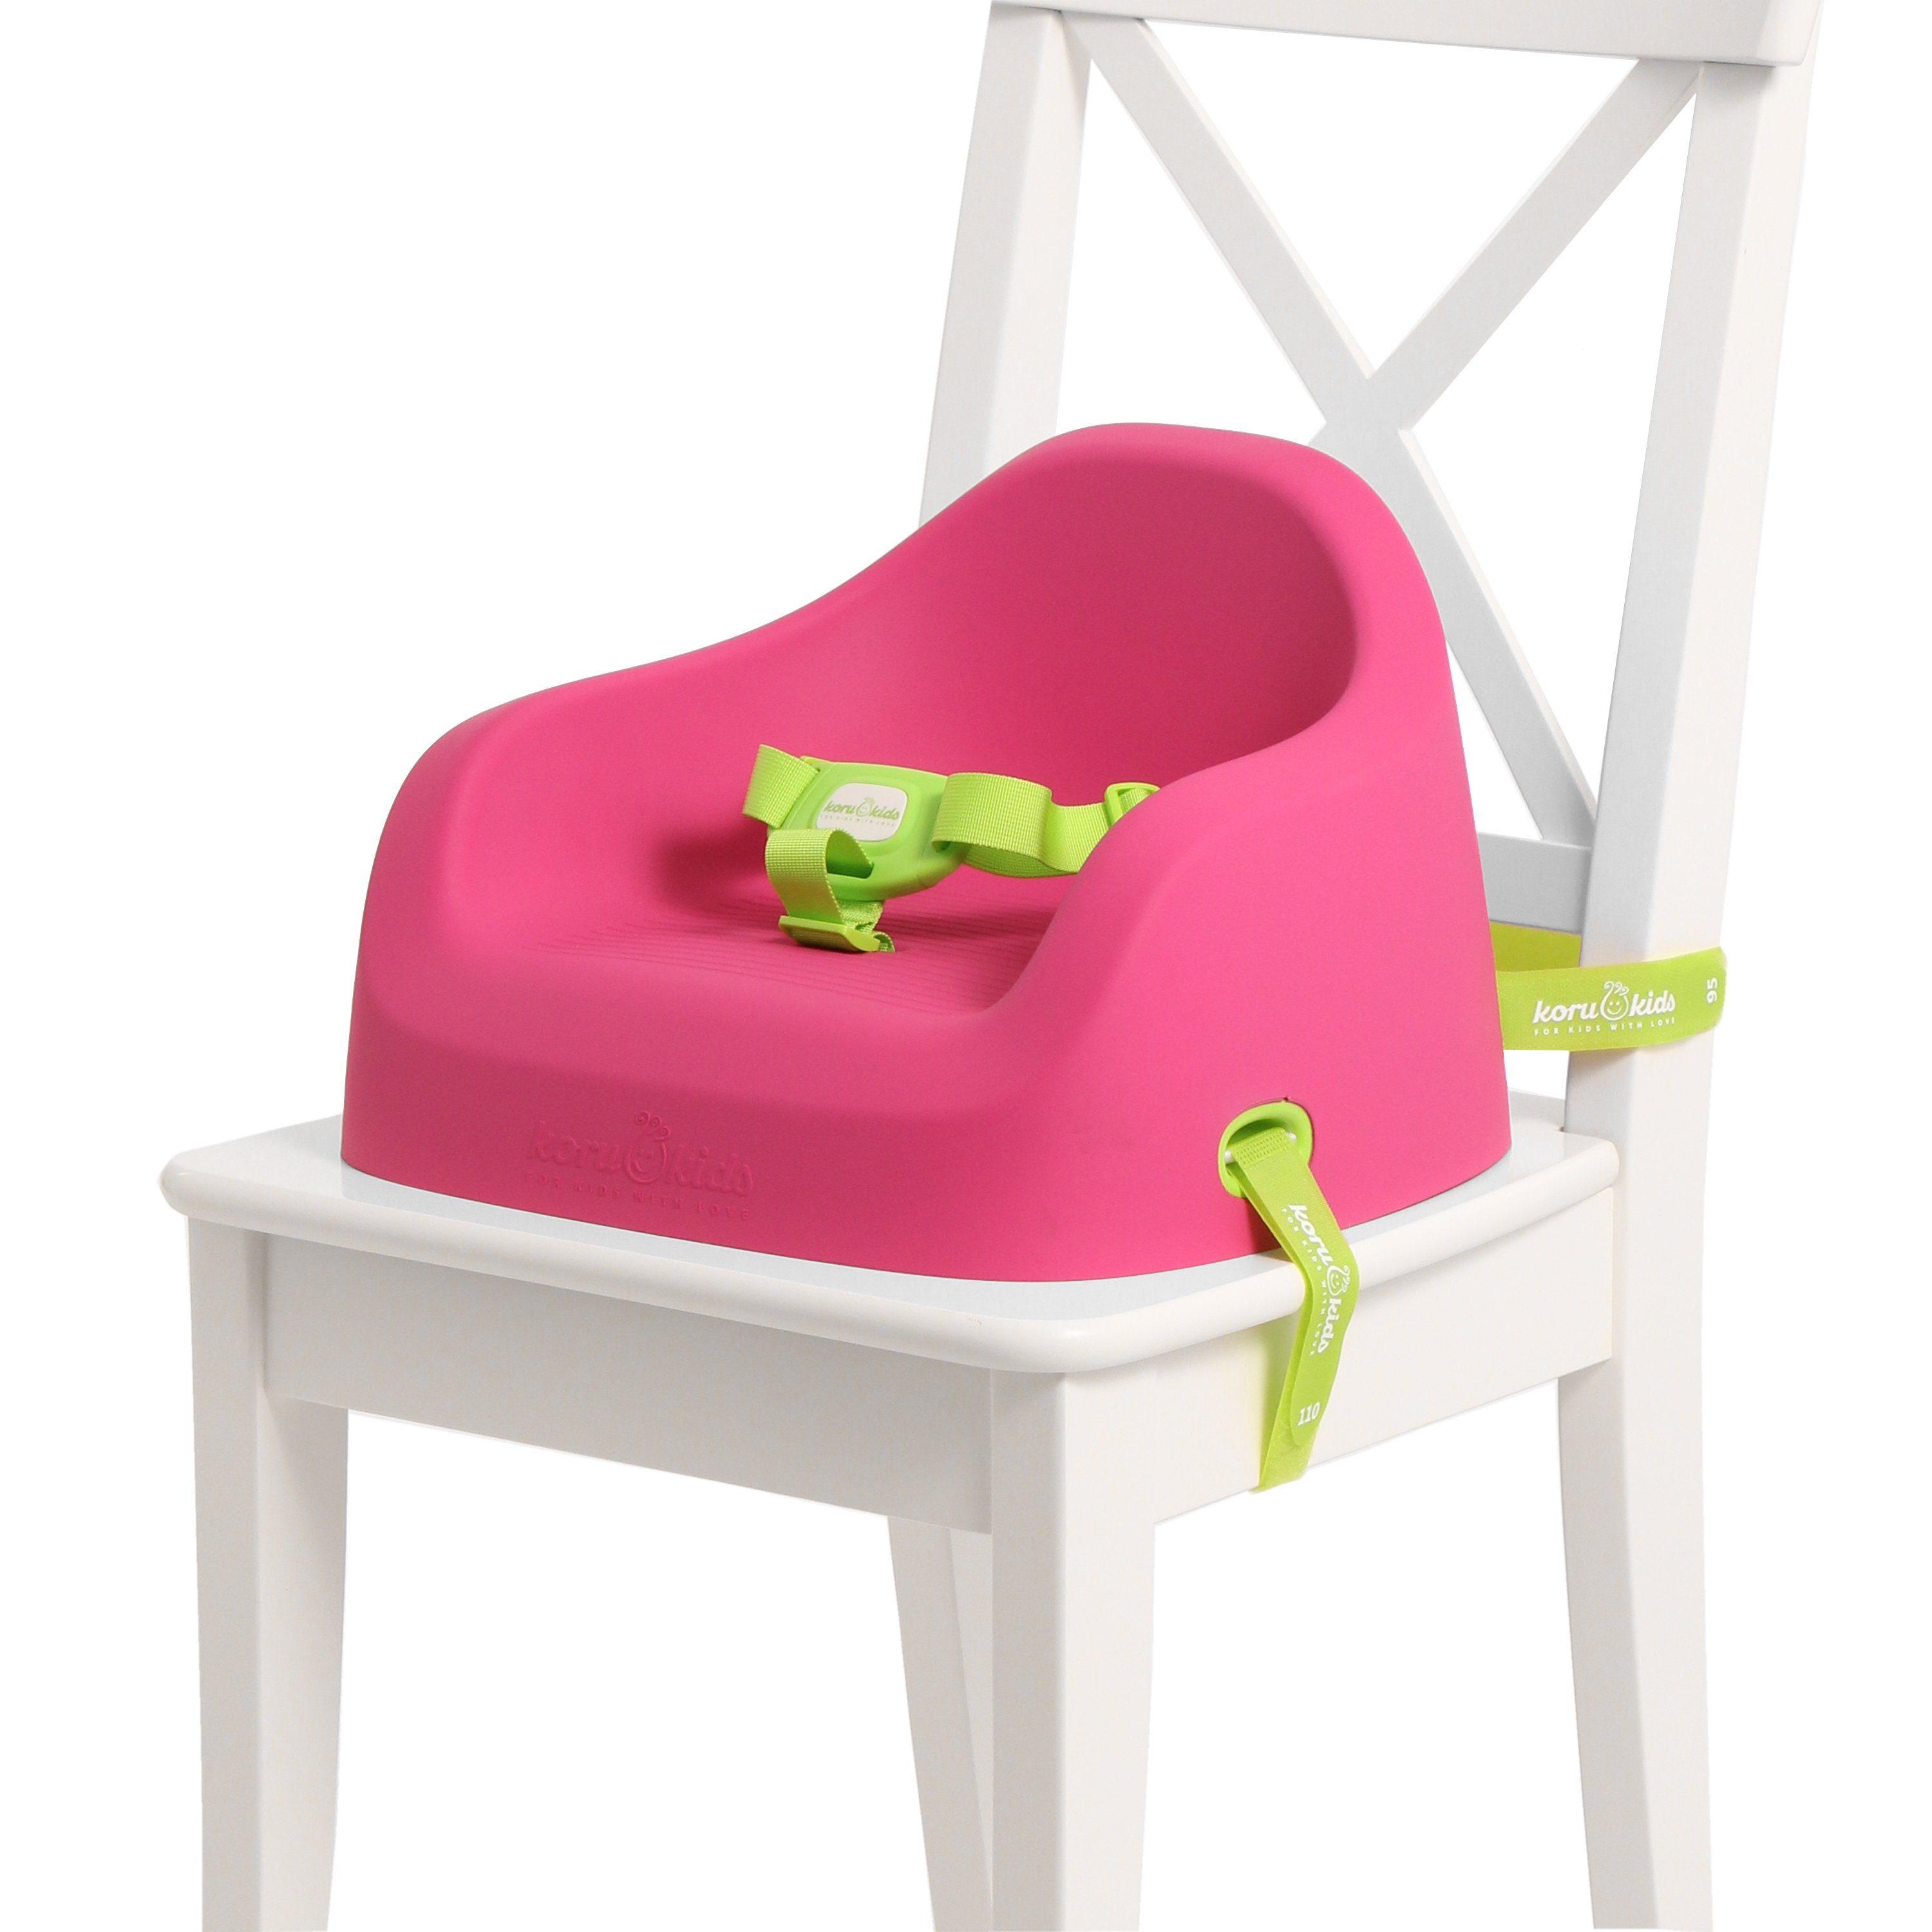 Koru Kids Kindersitzerhöhung Toddler Booster, ab: 12 Monate, bis: 7 Jahre plus, bis: 40,00 kg, Leicht am Stuhl zu fixieren, leicht zu reinigen, stapelbar, robust Fuchsia